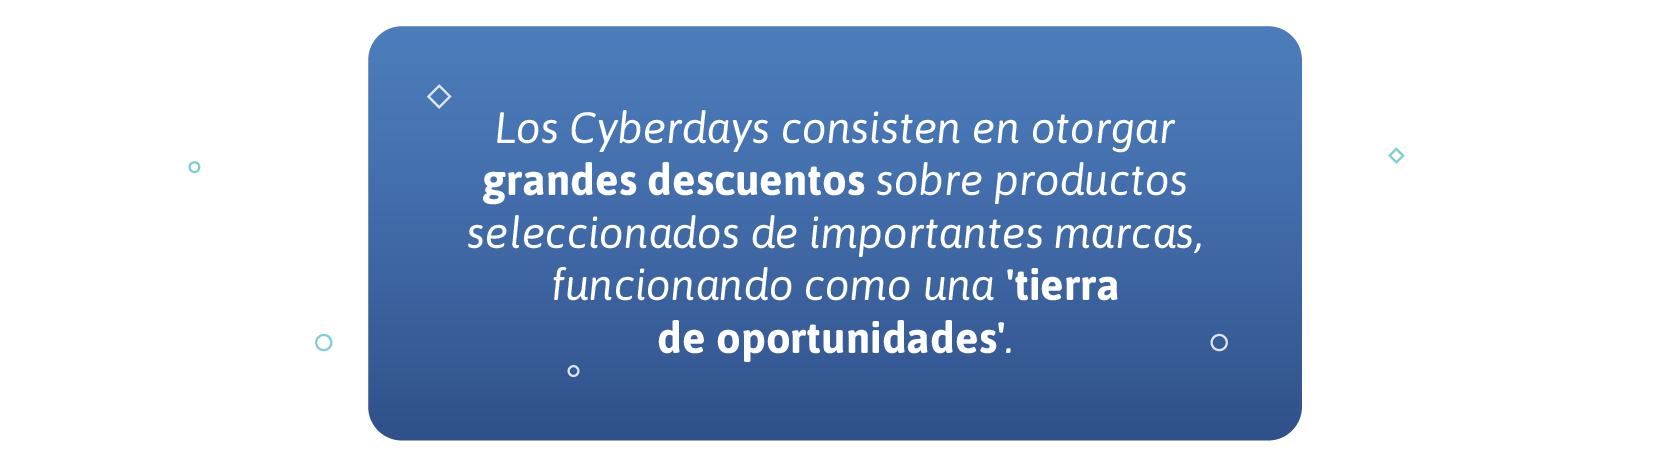 emblue-cyberdays-oportunidades